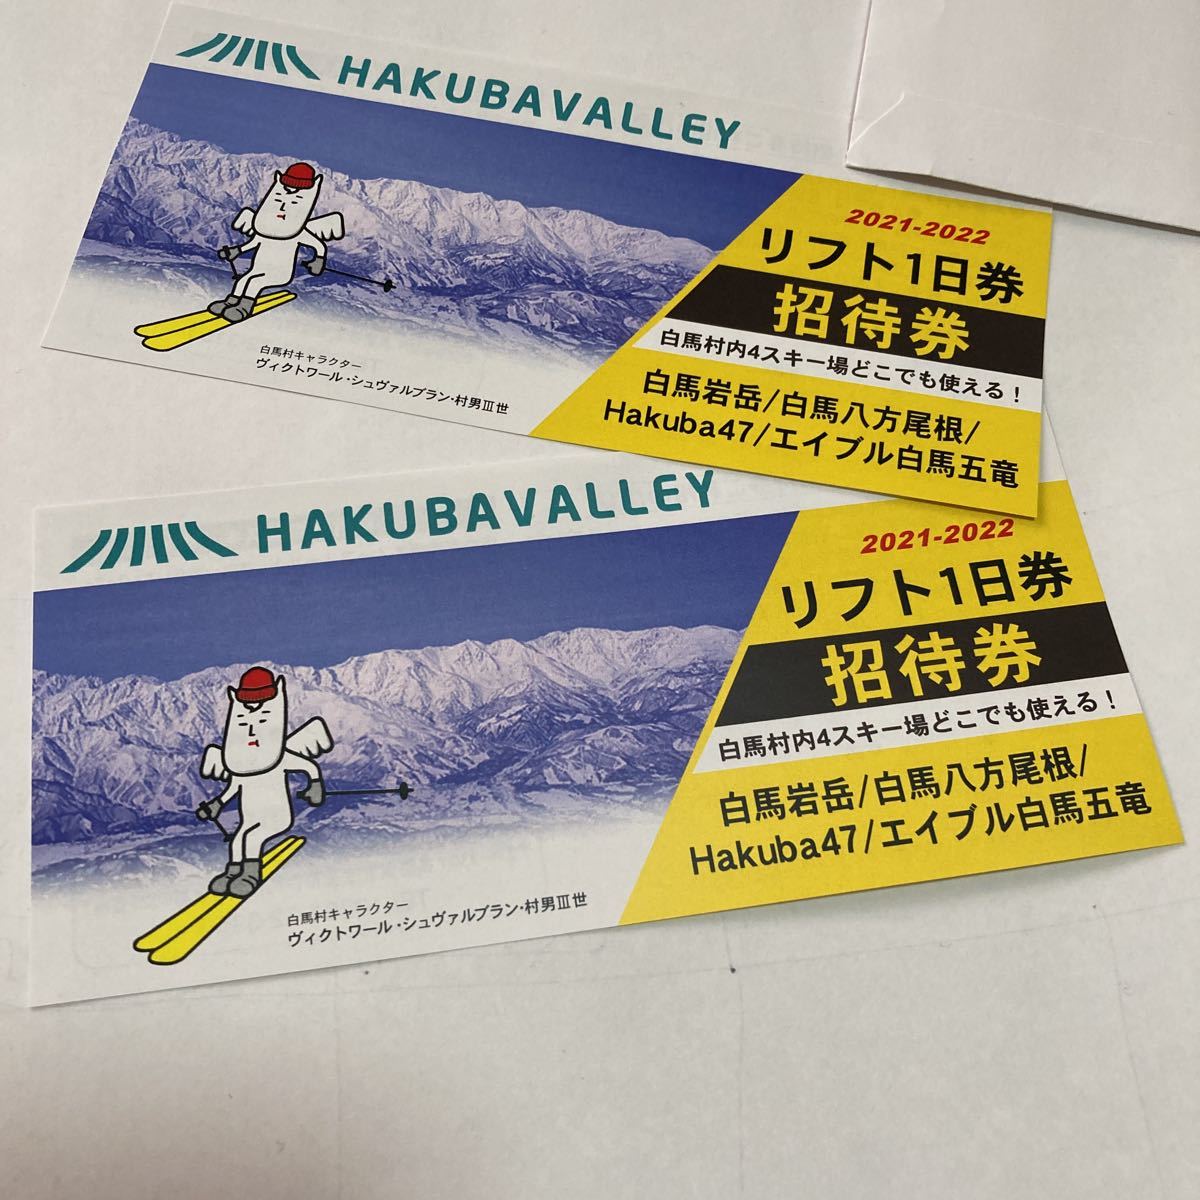 エイブル白馬五竜・Hakuba47 リフト1日券 2枚 - スキー場